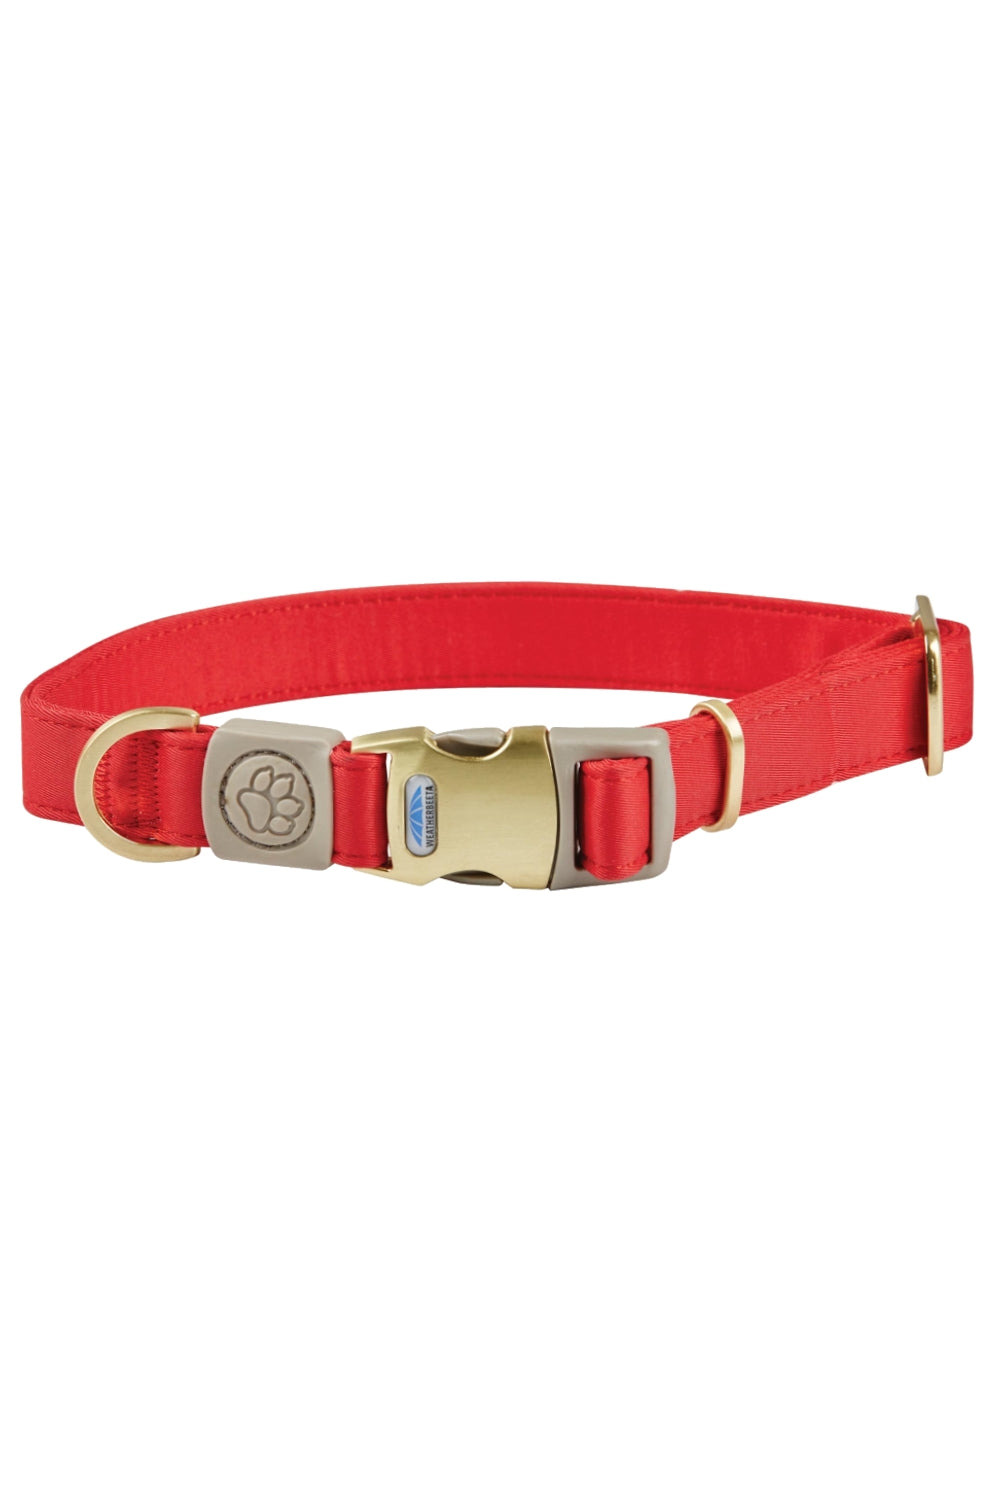 WeatherBeeta Elegance Dog Collar in Red